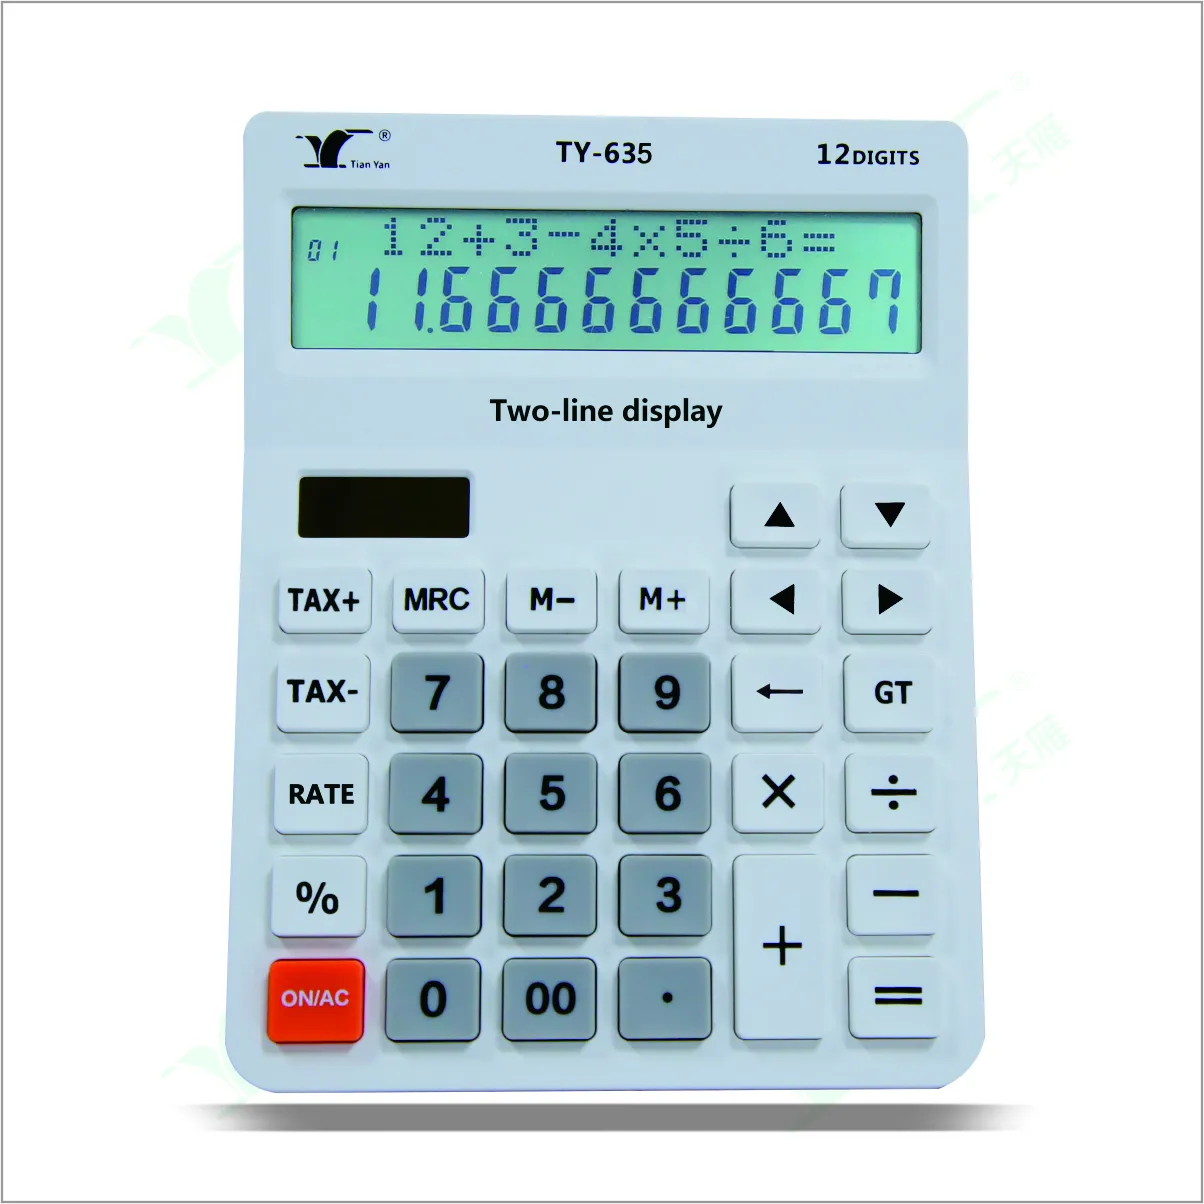 Kalkulator fungsi pajak meja tampilan 2 garis baterai dan kalkulator Desktop daya ganda surya